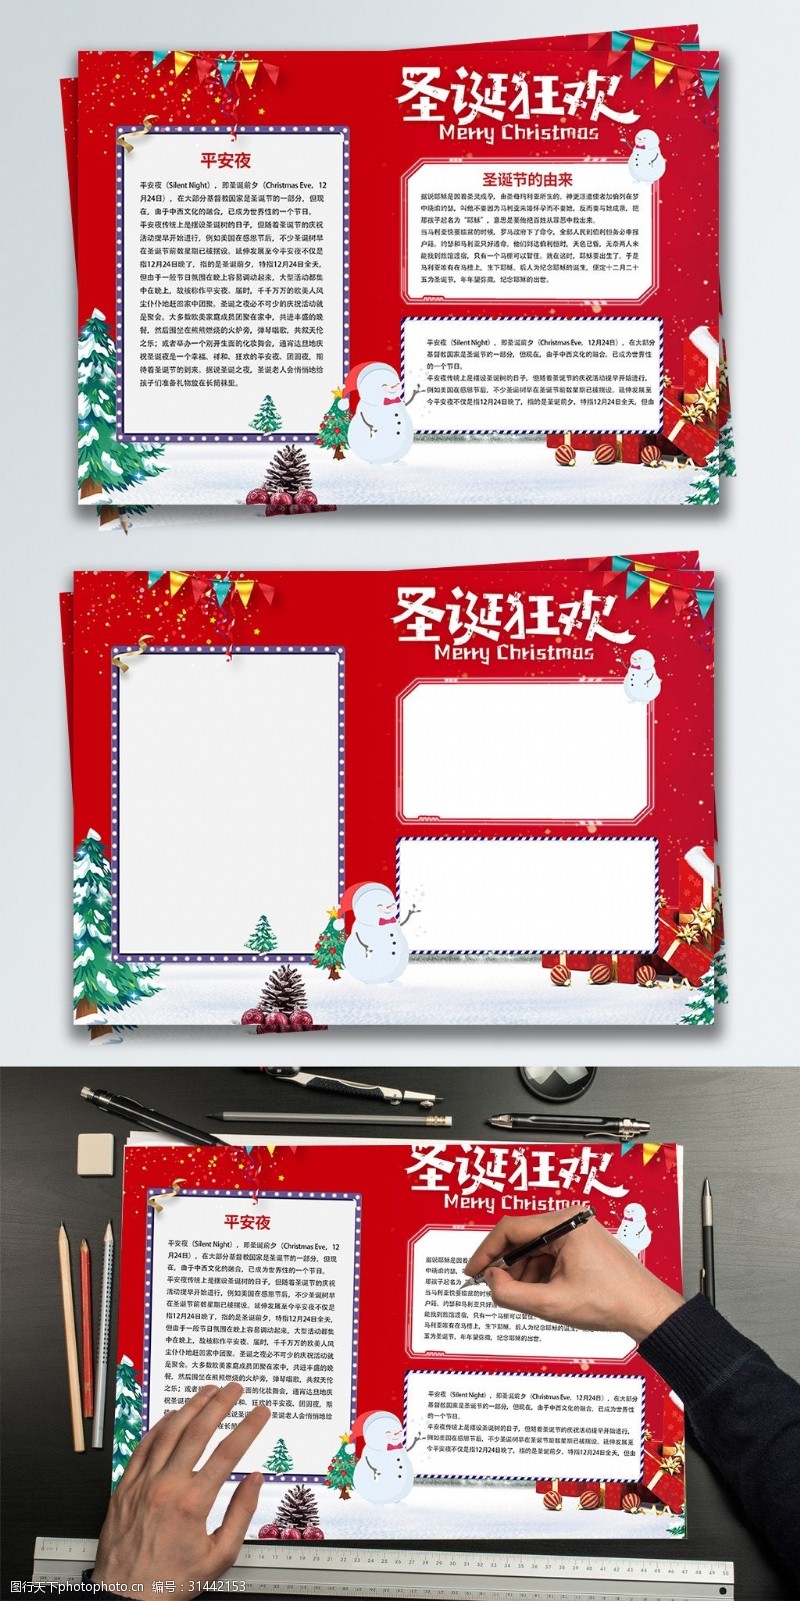 手抄报模板圣诞红色简约节日手抄报设计PSD模板